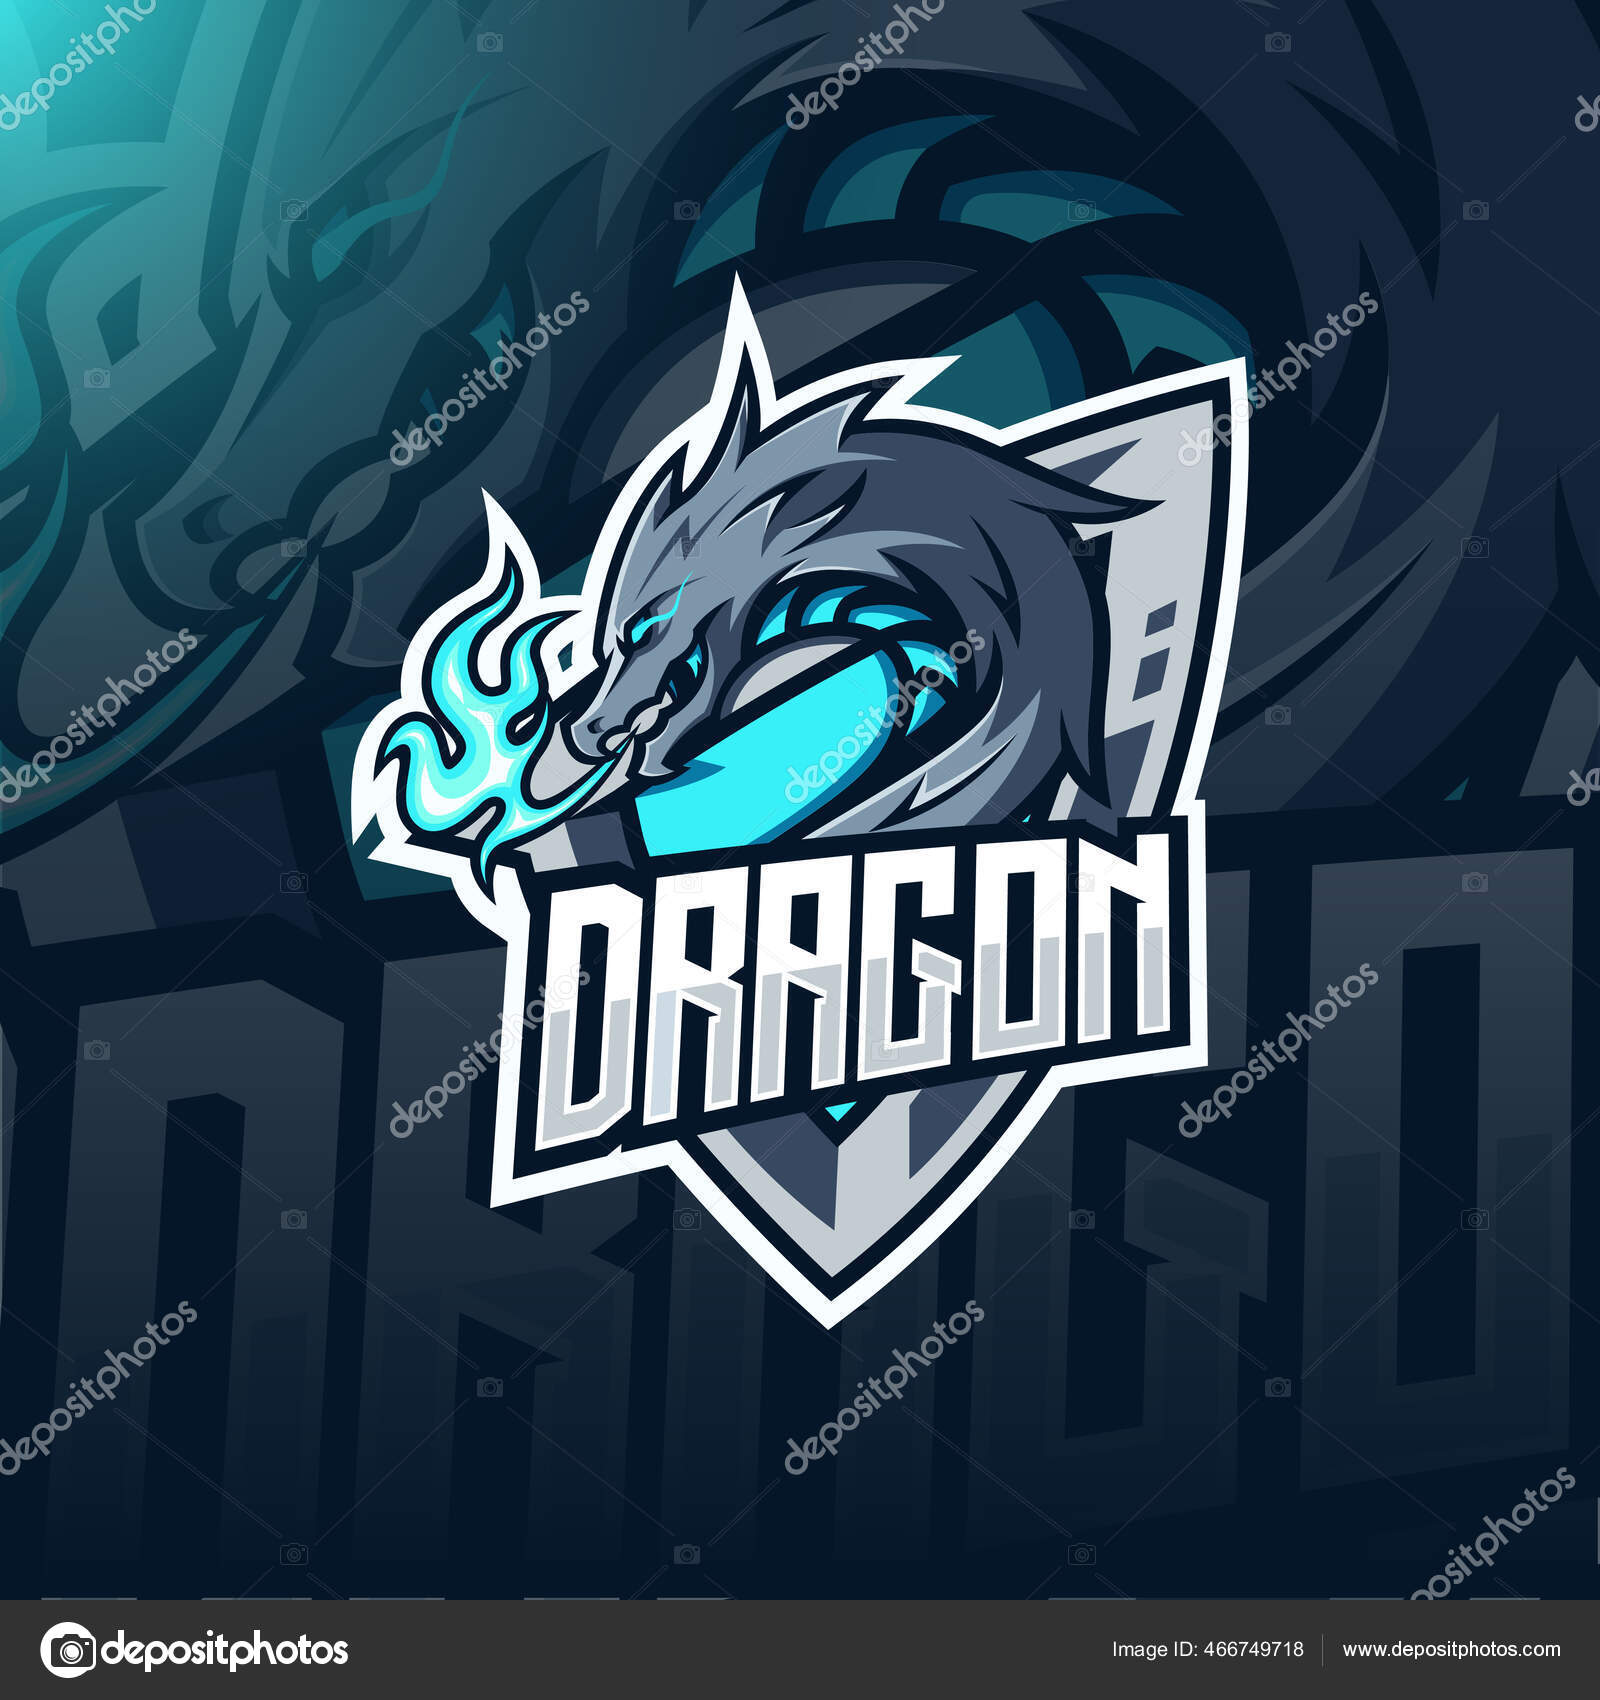 Logotipo Do Jogo Esport De Cabeça Azul De Dragão Ilustração do Vetor -  Ilustração de mito, azul: 220657056